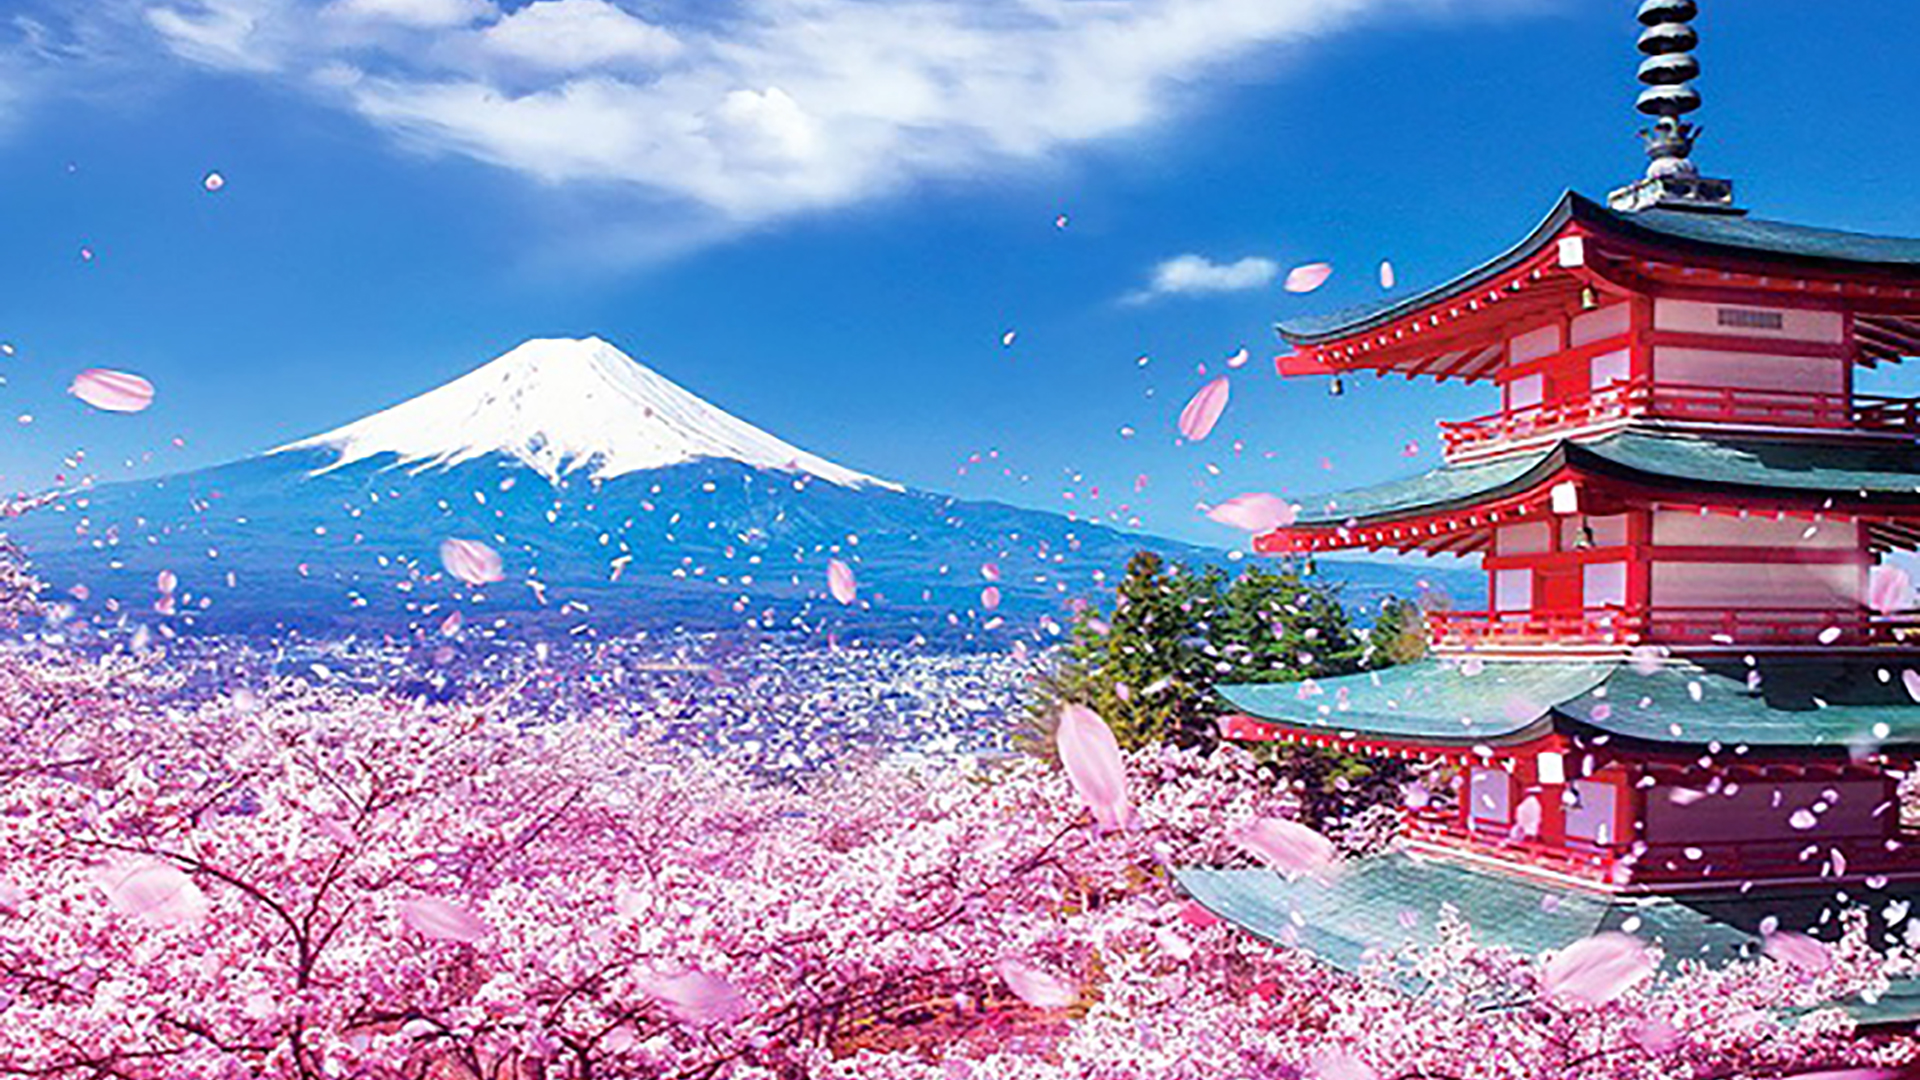 Hình ảnh Nhật Bản Vẻ đẹp Nhật Bản qua ảnh  Japannetvn